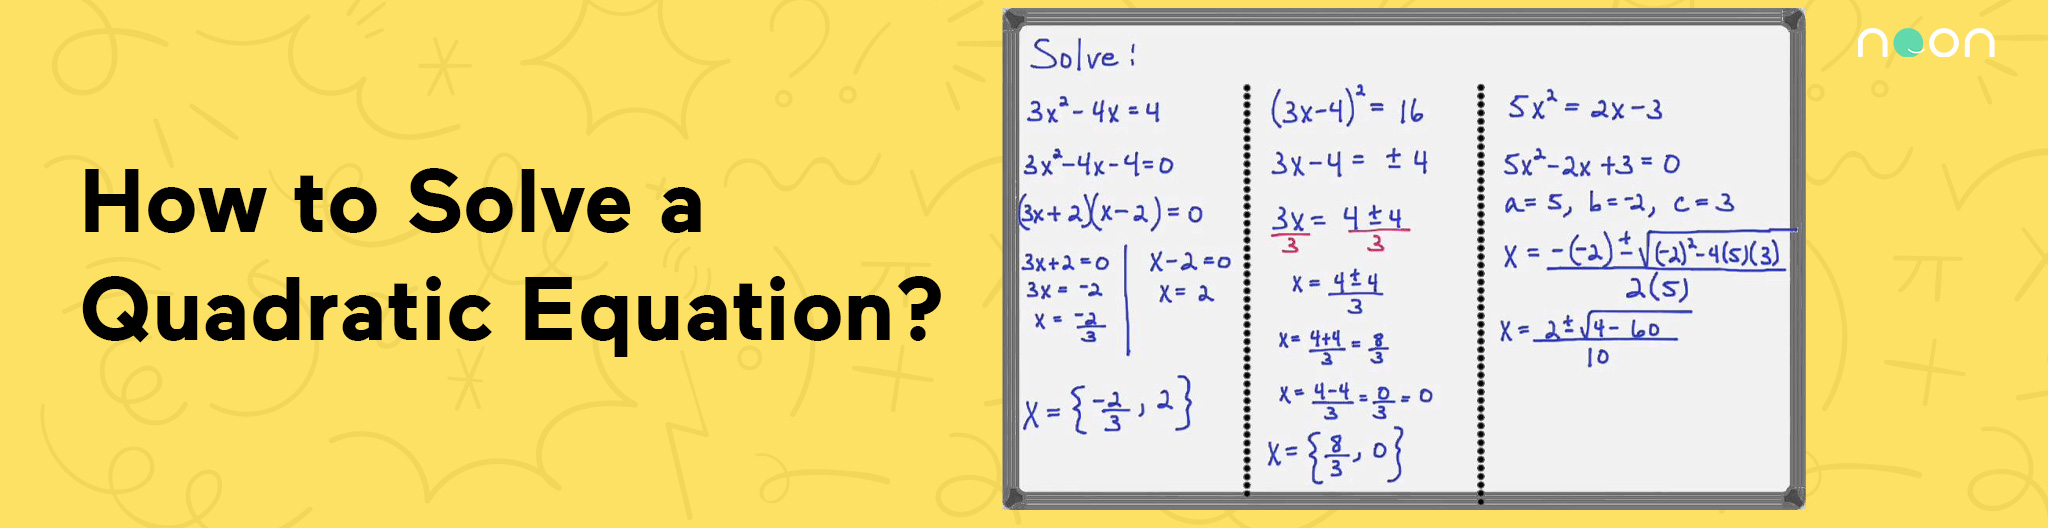 How to Solve a Quadratic Equation